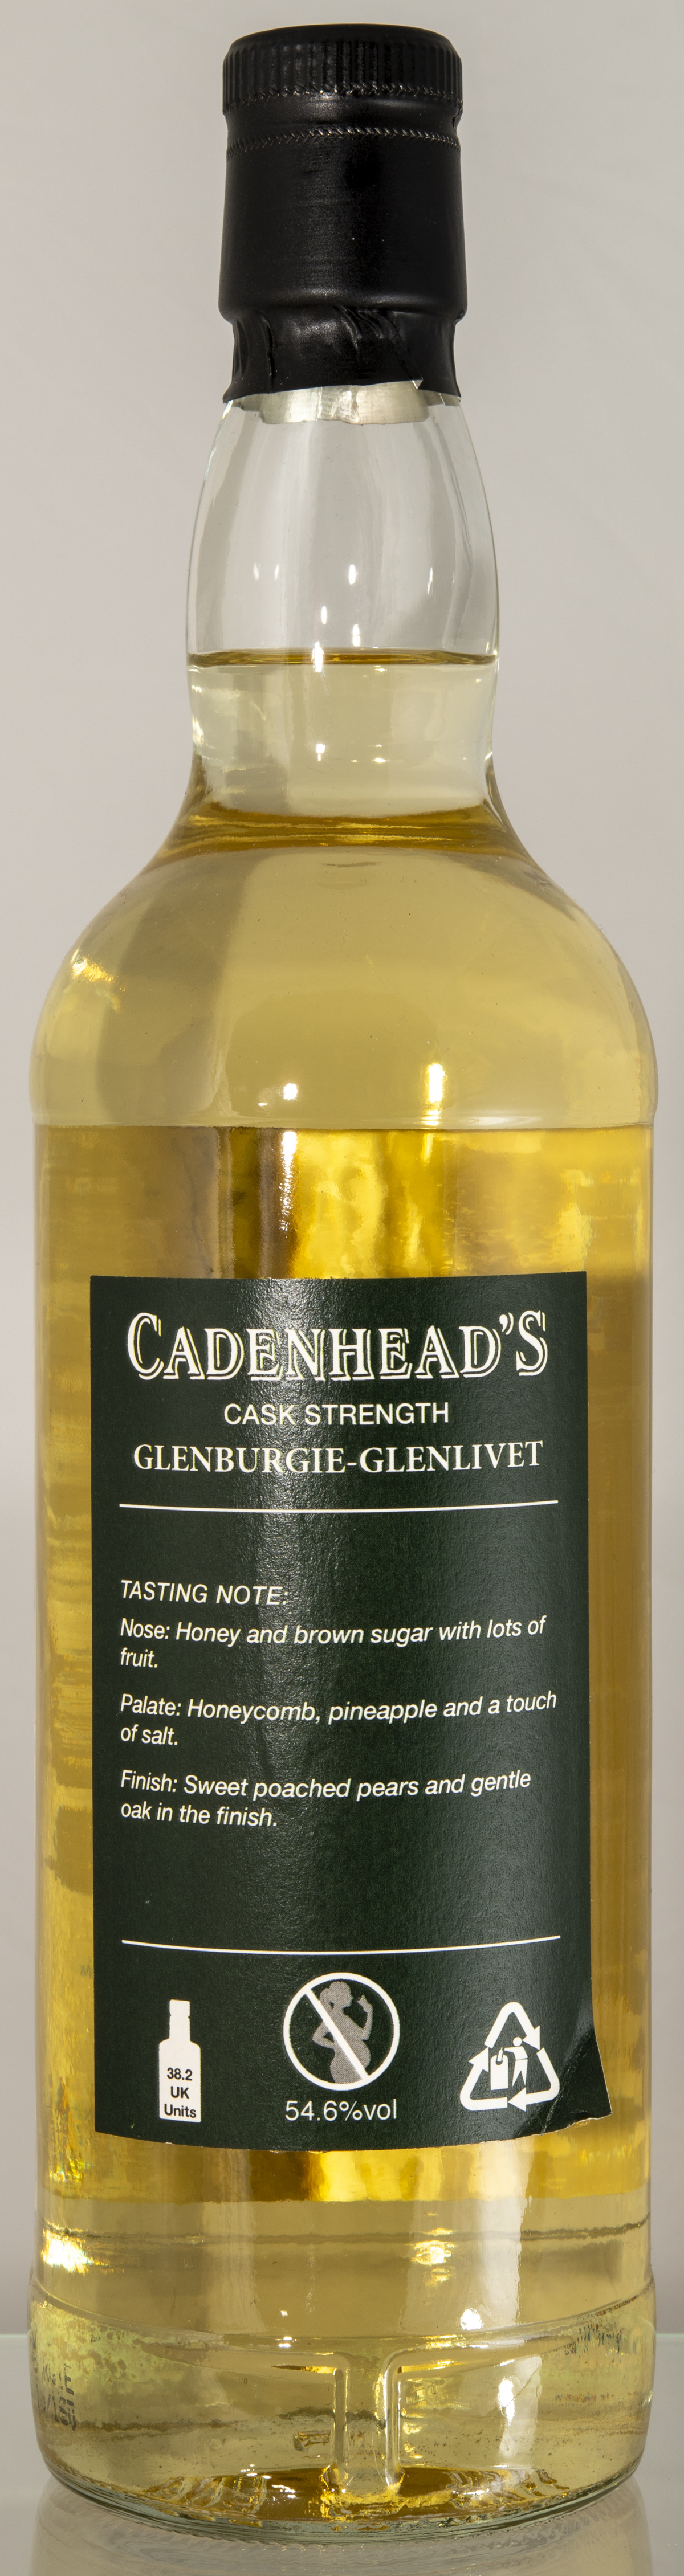 Billede: D85_8335 - Cadenhead Authentic Collection - Glenburgie-Glenlivet 13 - bottle back.jpg